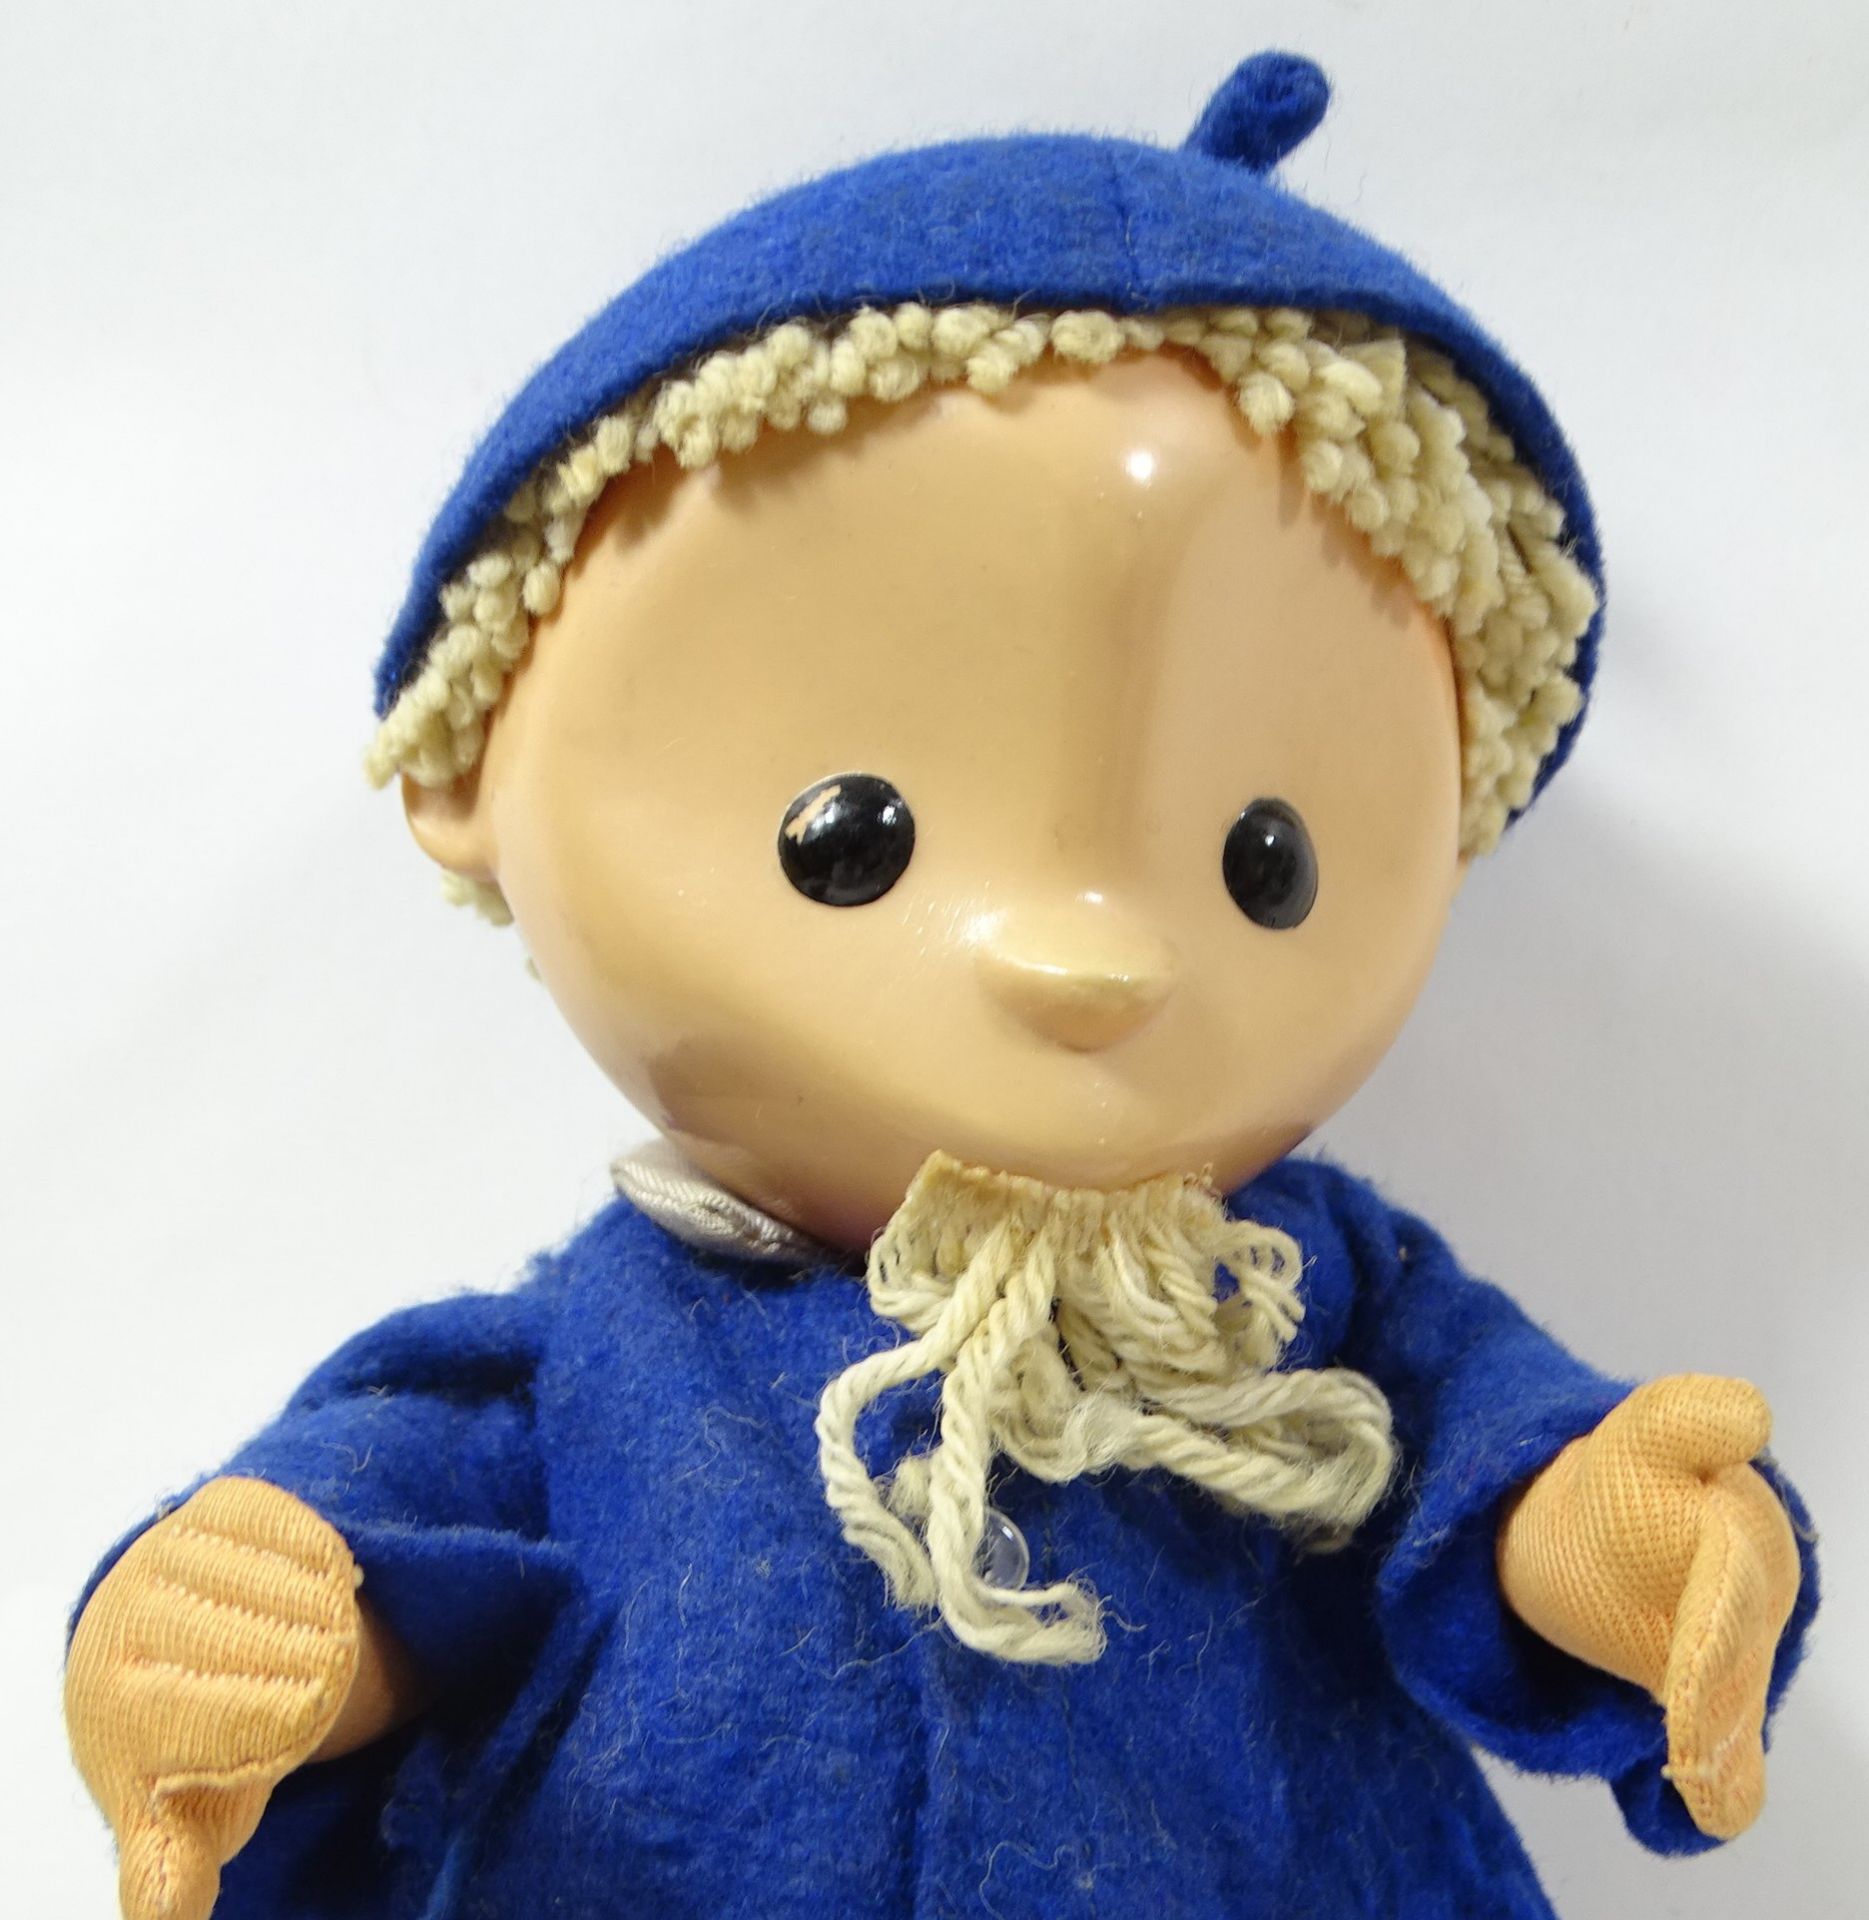 Sandmännchen-Puppe, H. 23 cm, Füße und Kopf Kunstsoff, Körper Stoff, guter Zustand - Bild 6 aus 6